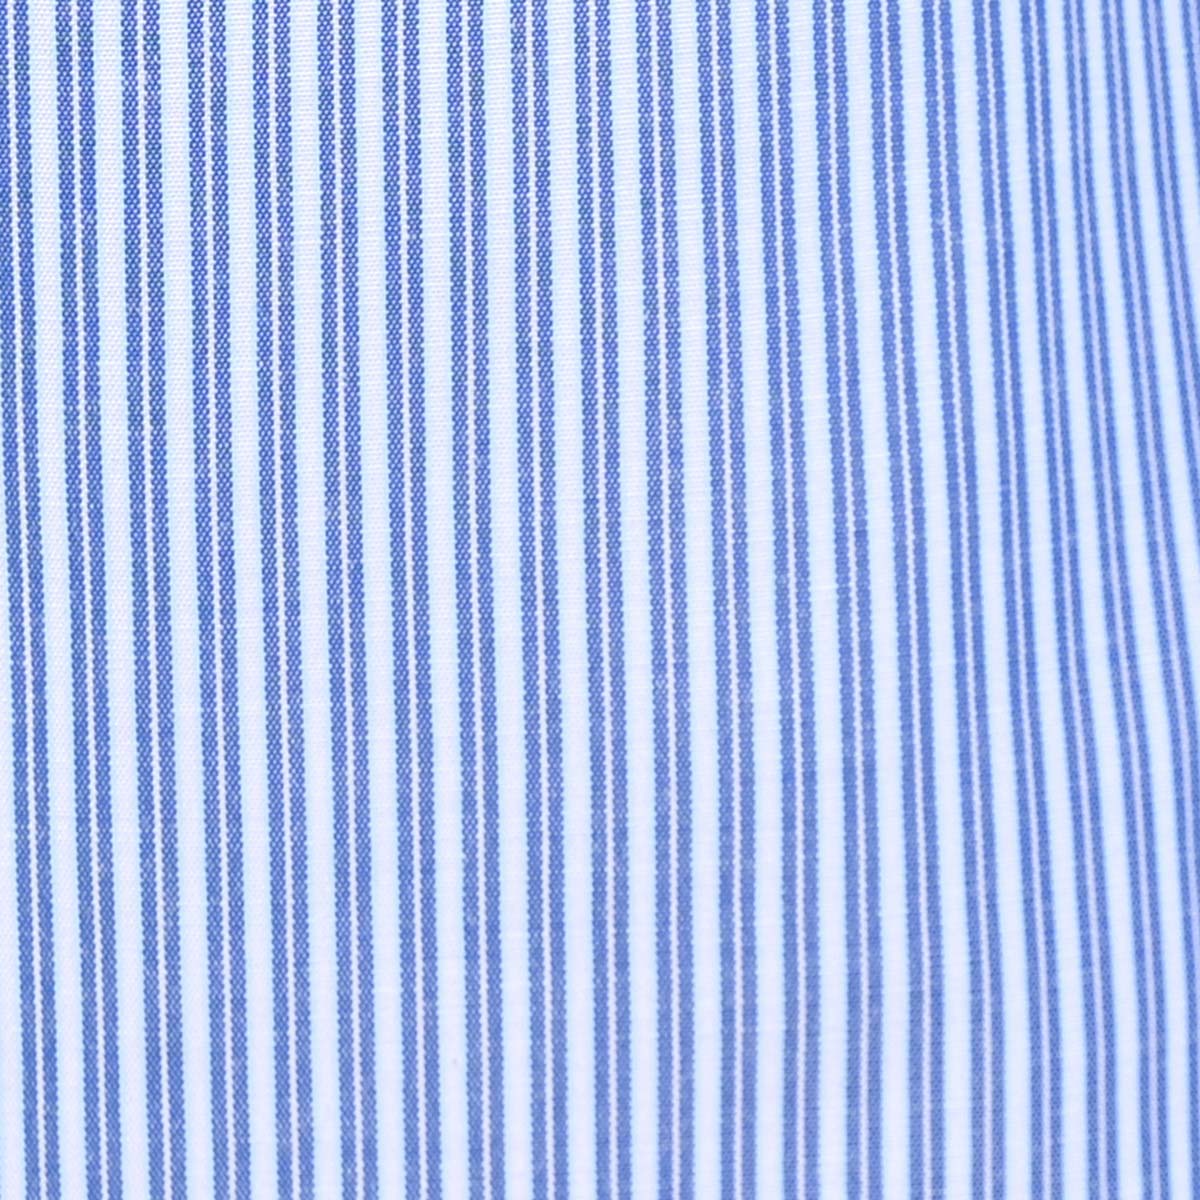 Camisa A Rayas De Manga Larga De Color Azul